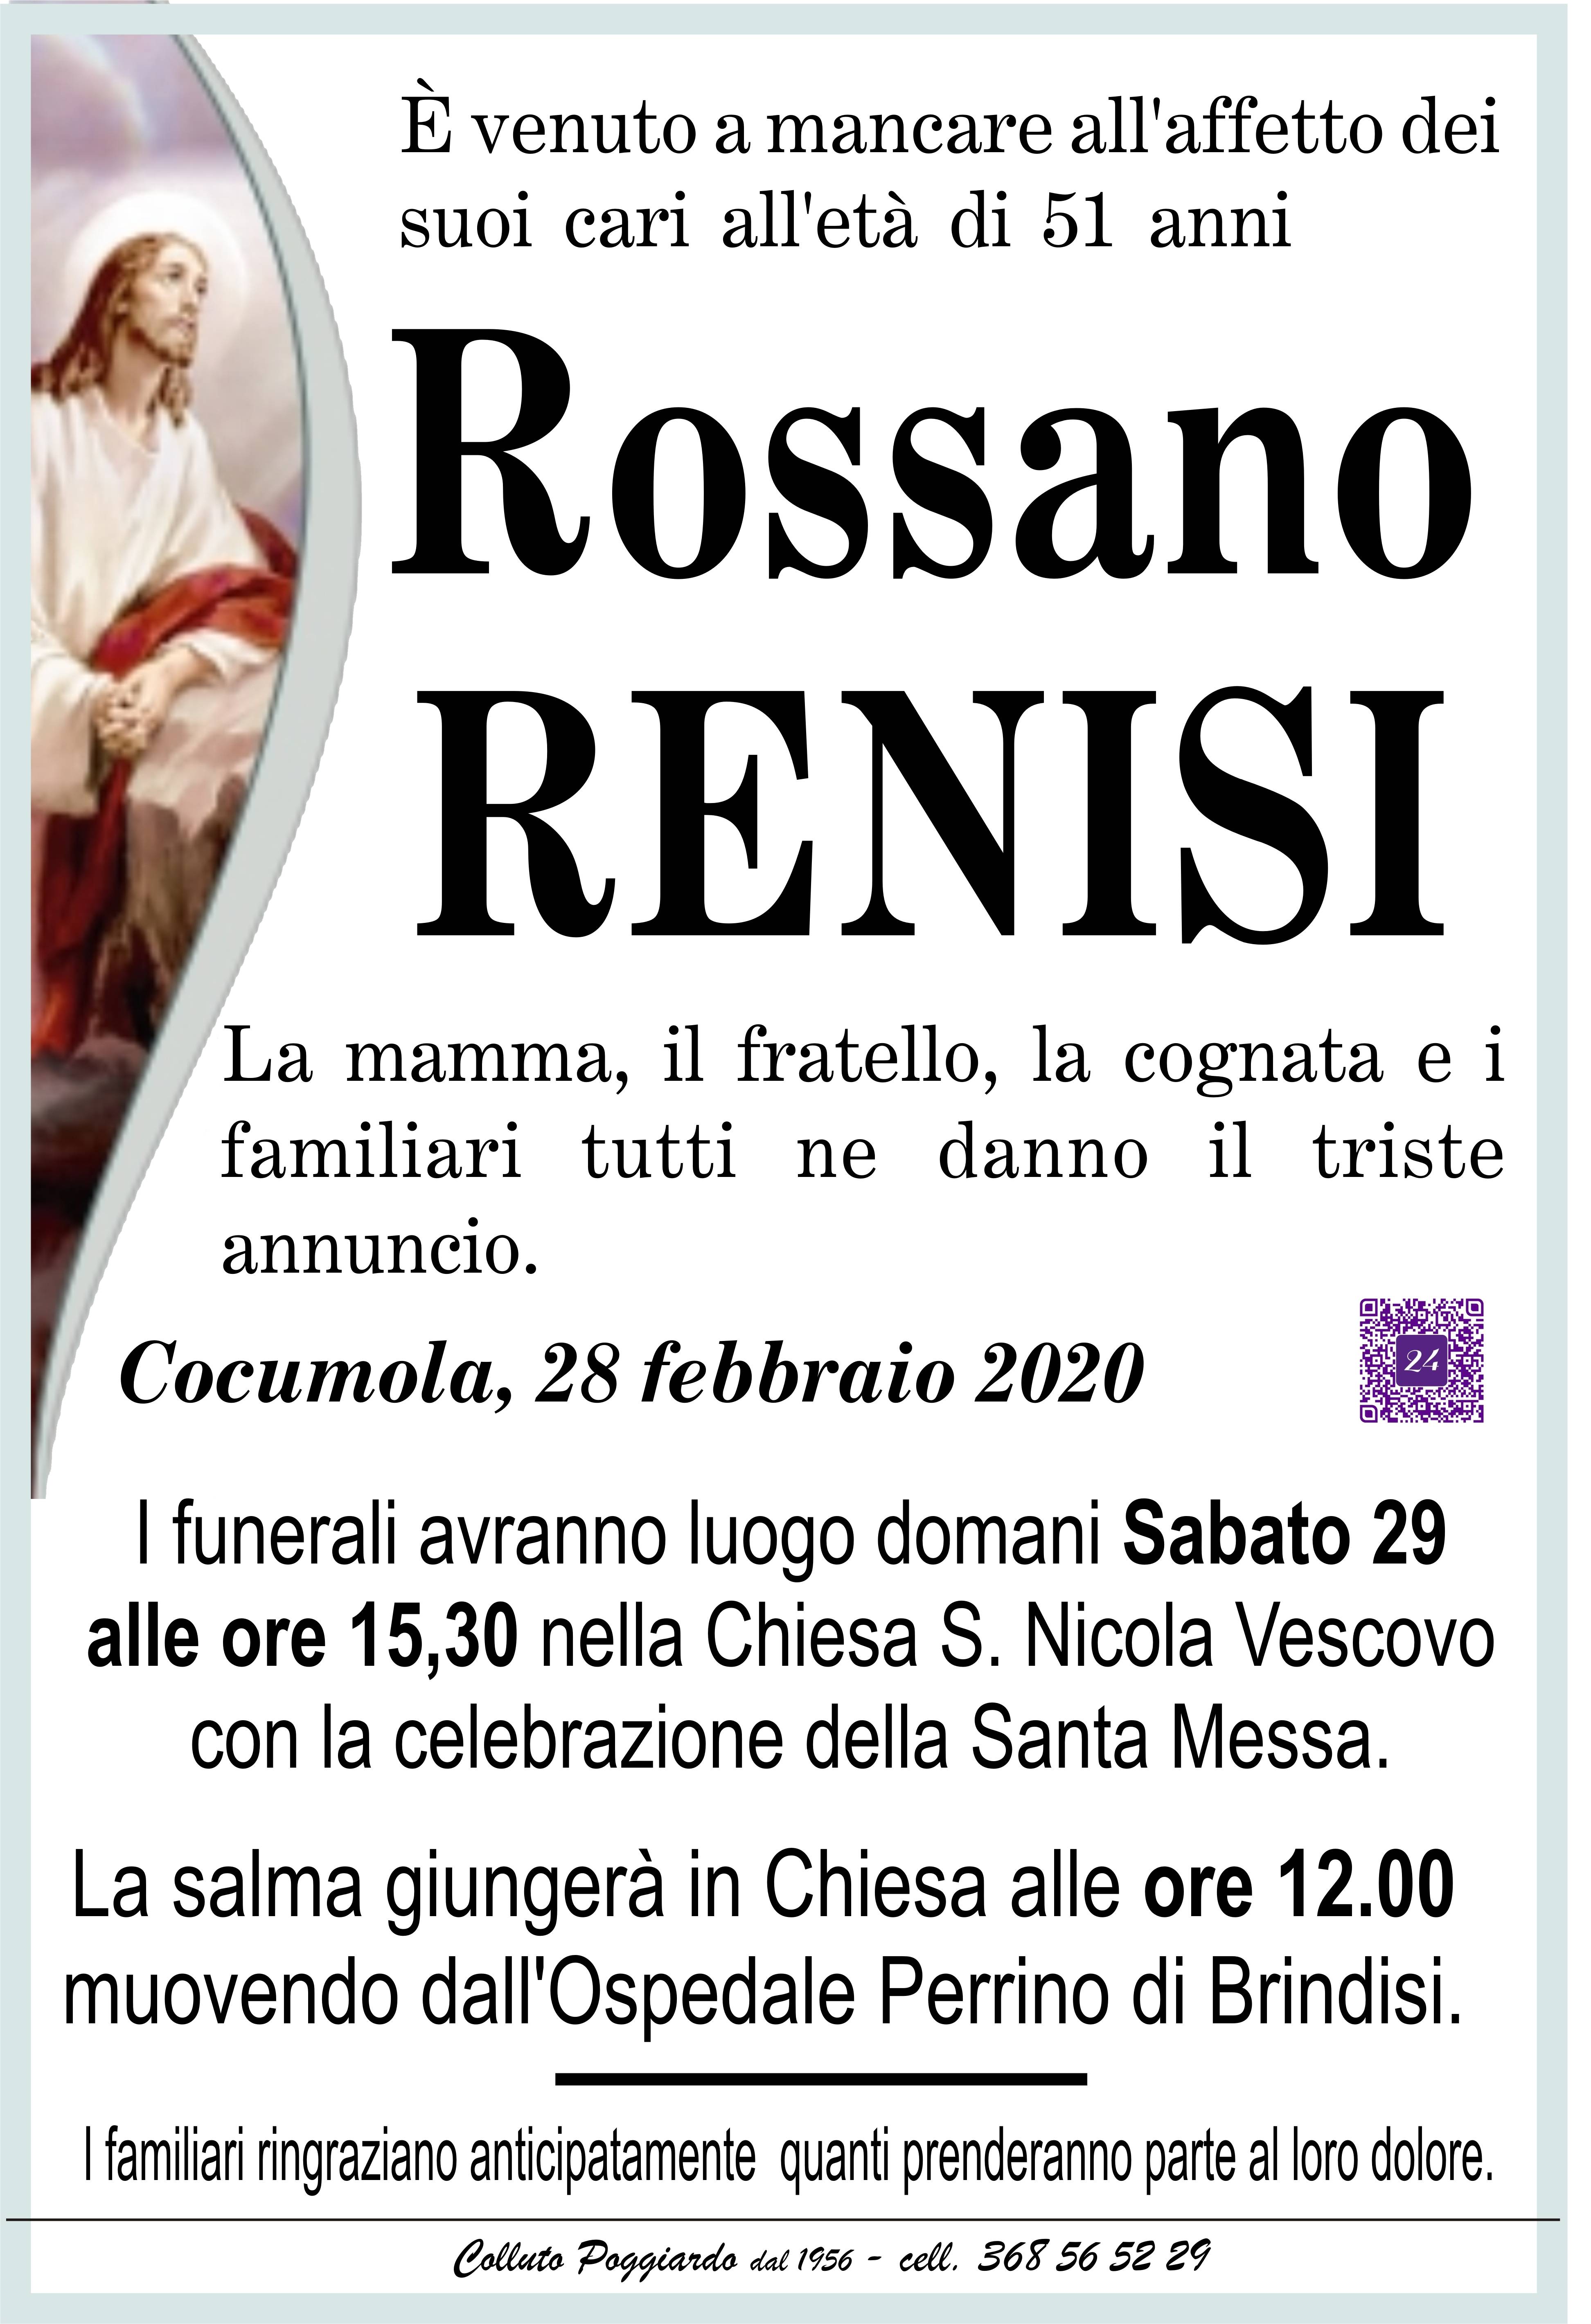 Rossano Renisi